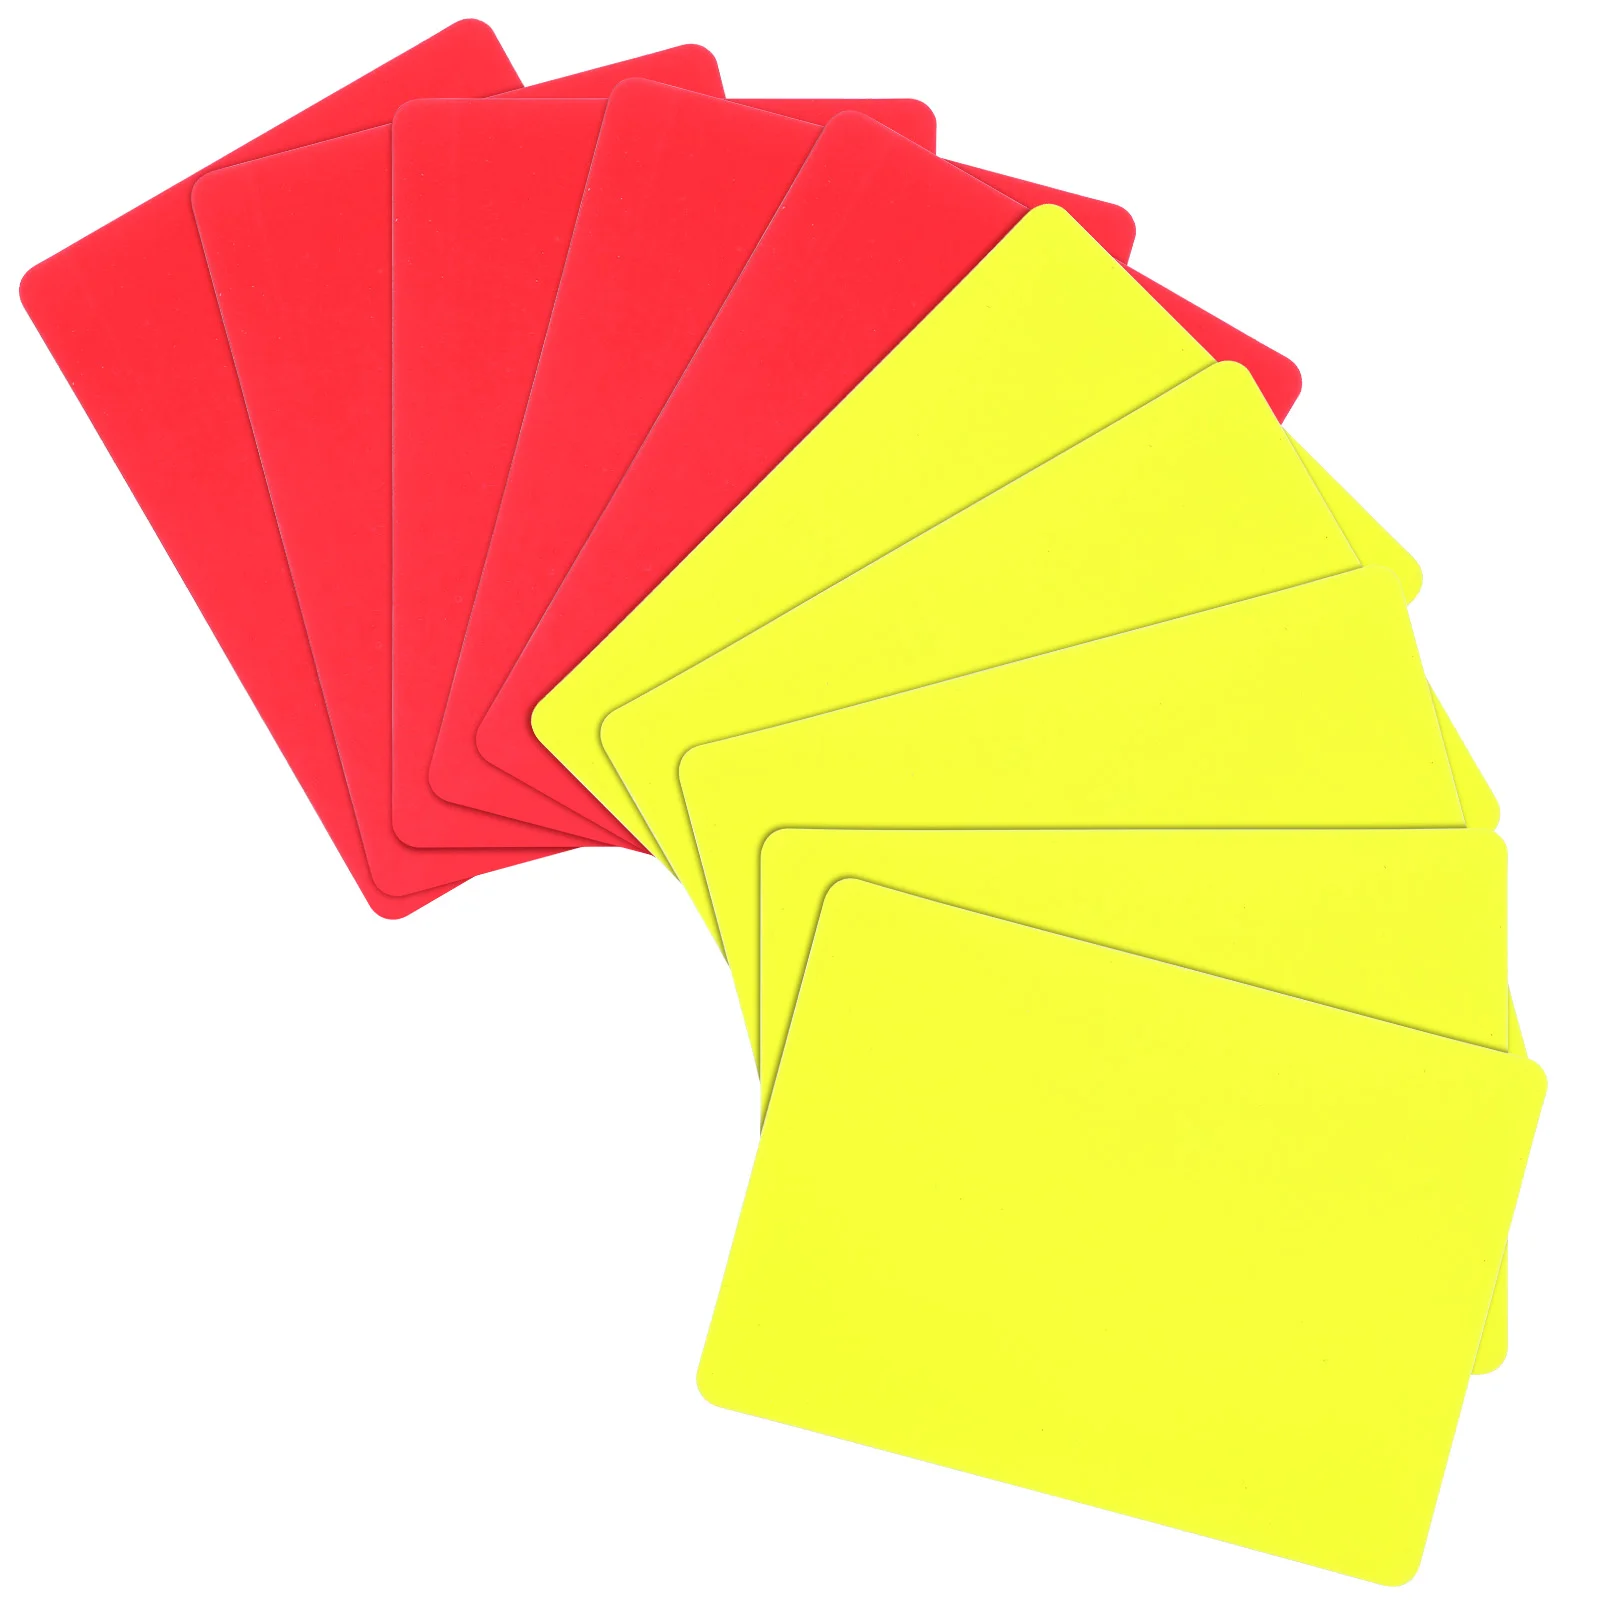 

Набор карт для судей, стандартные карты для футбола, красные желтые карты судей, Уличное оборудование для тренировок по футболу, матчам